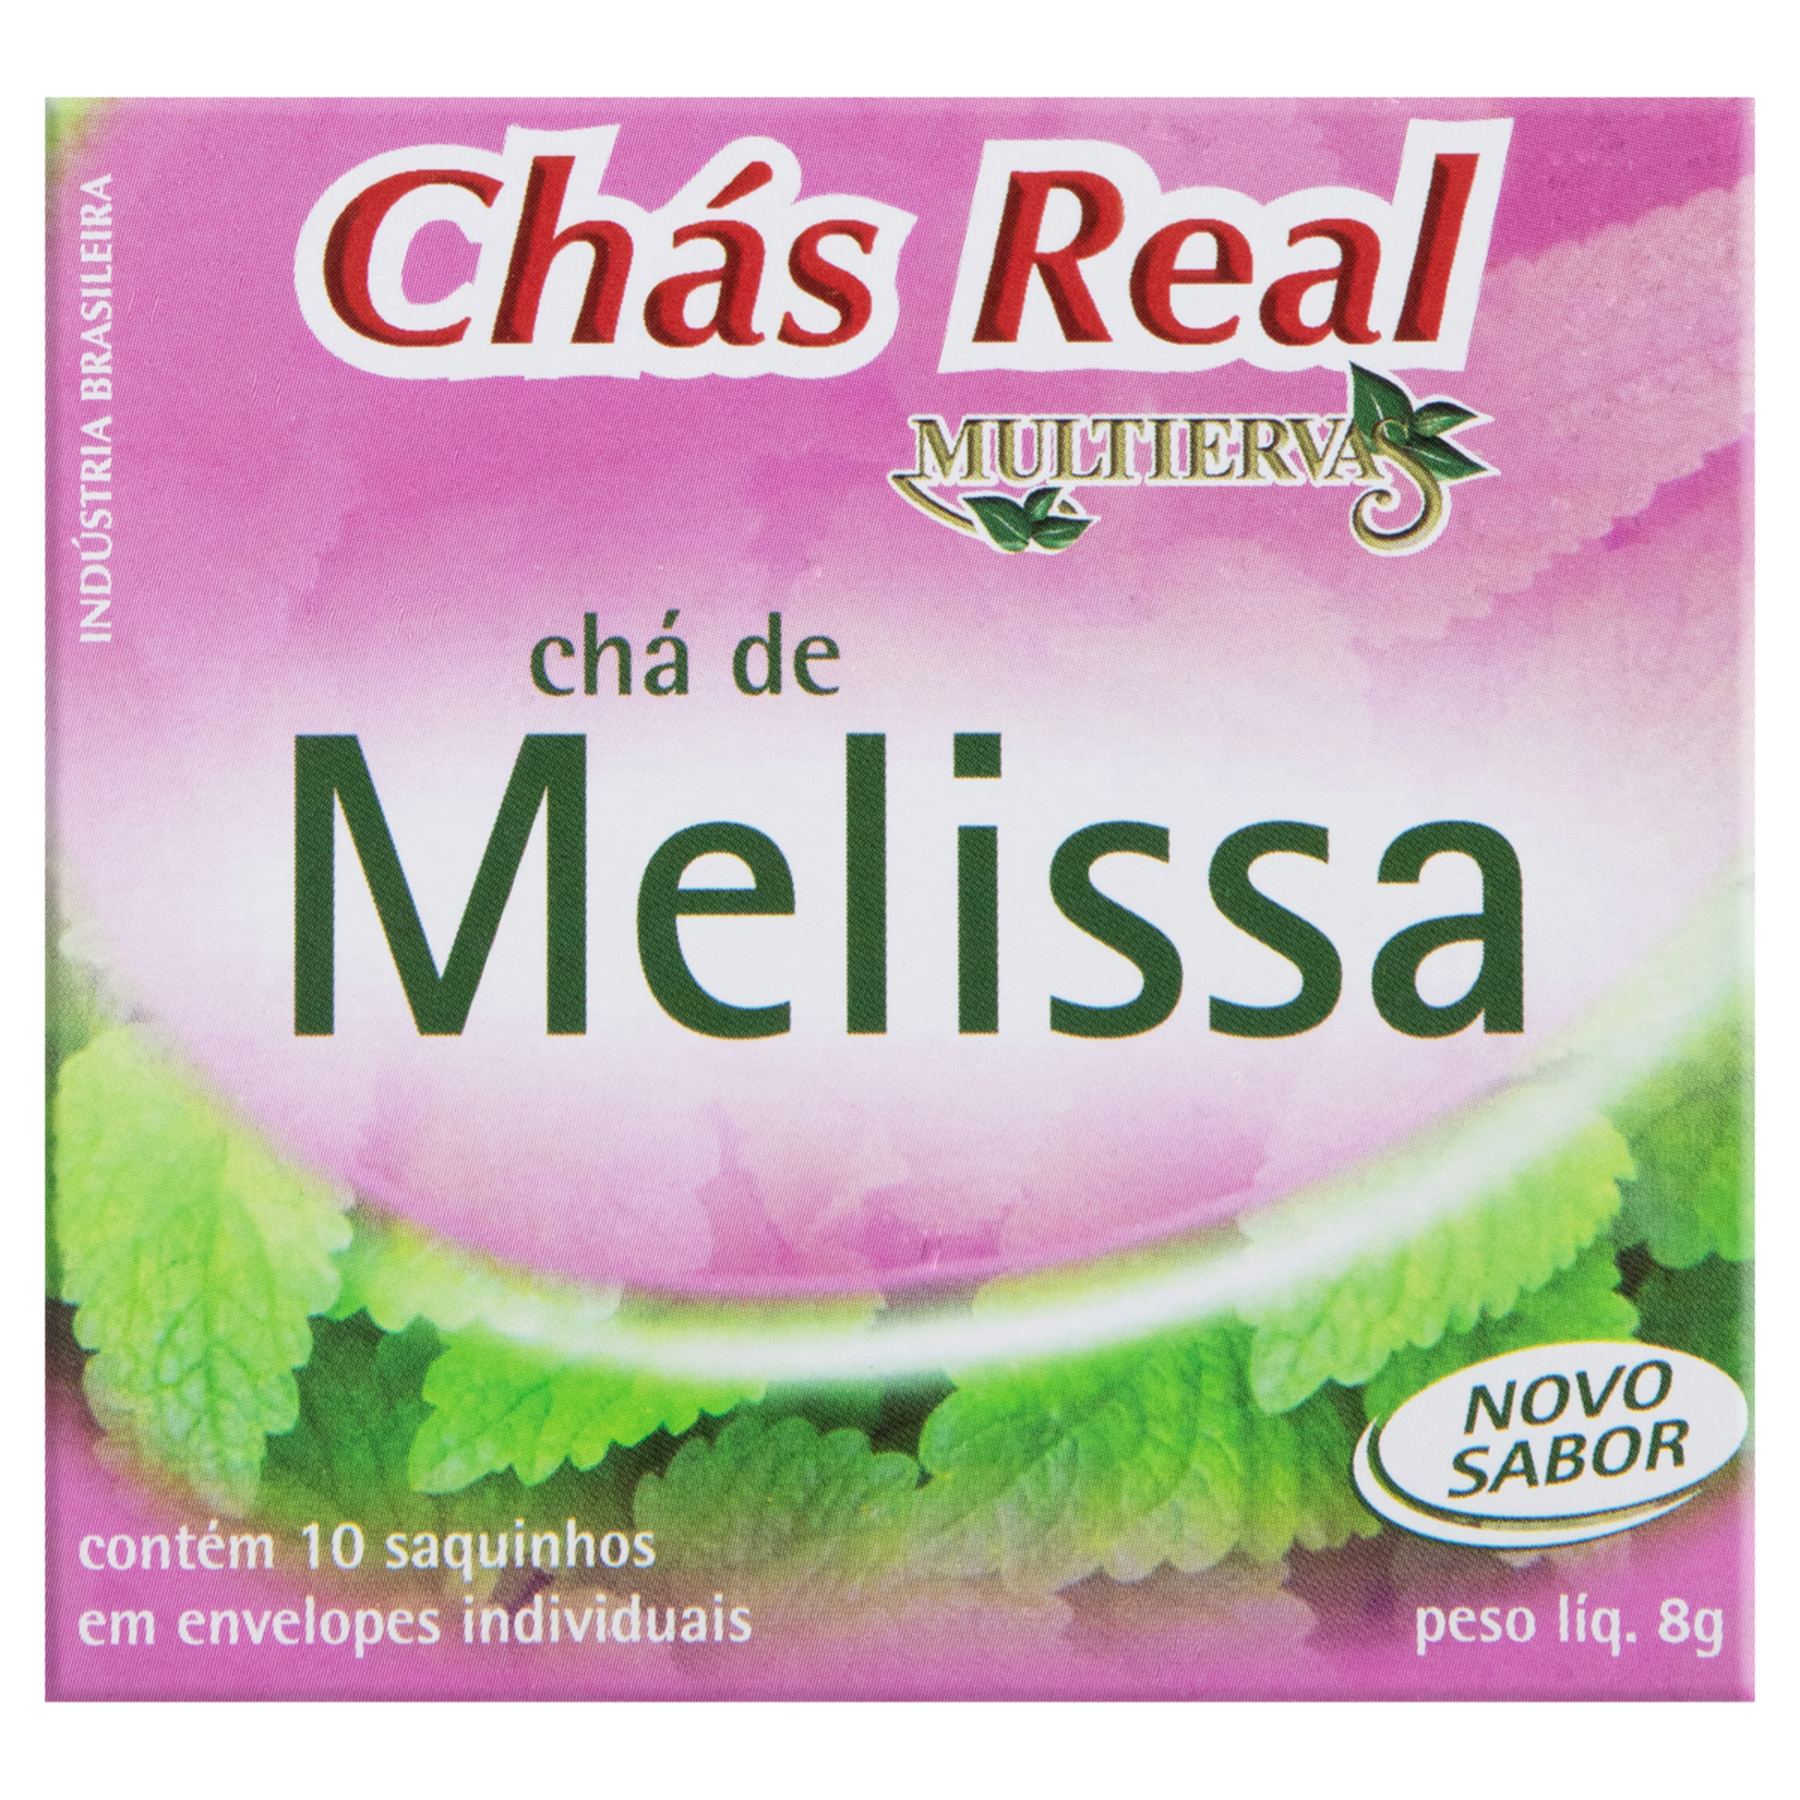 Chá Melissa Real Multiervas Caixa 8g 10 Unidades